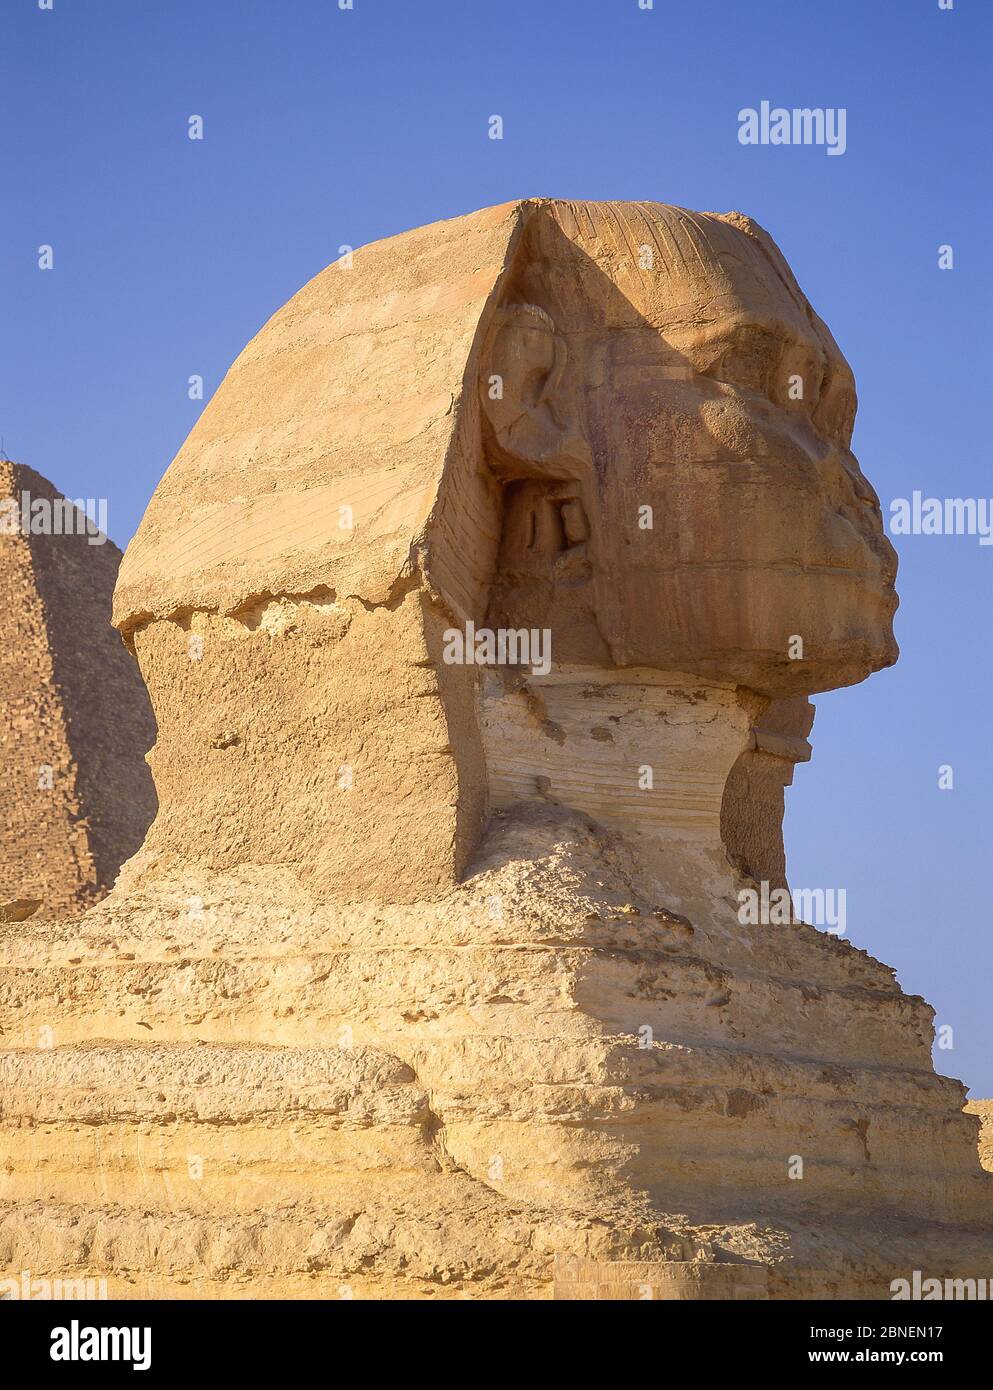 Le Grand Sphinx de Gizeh, Giza, Govergate de Gizeh, République d'Égypte Banque D'Images